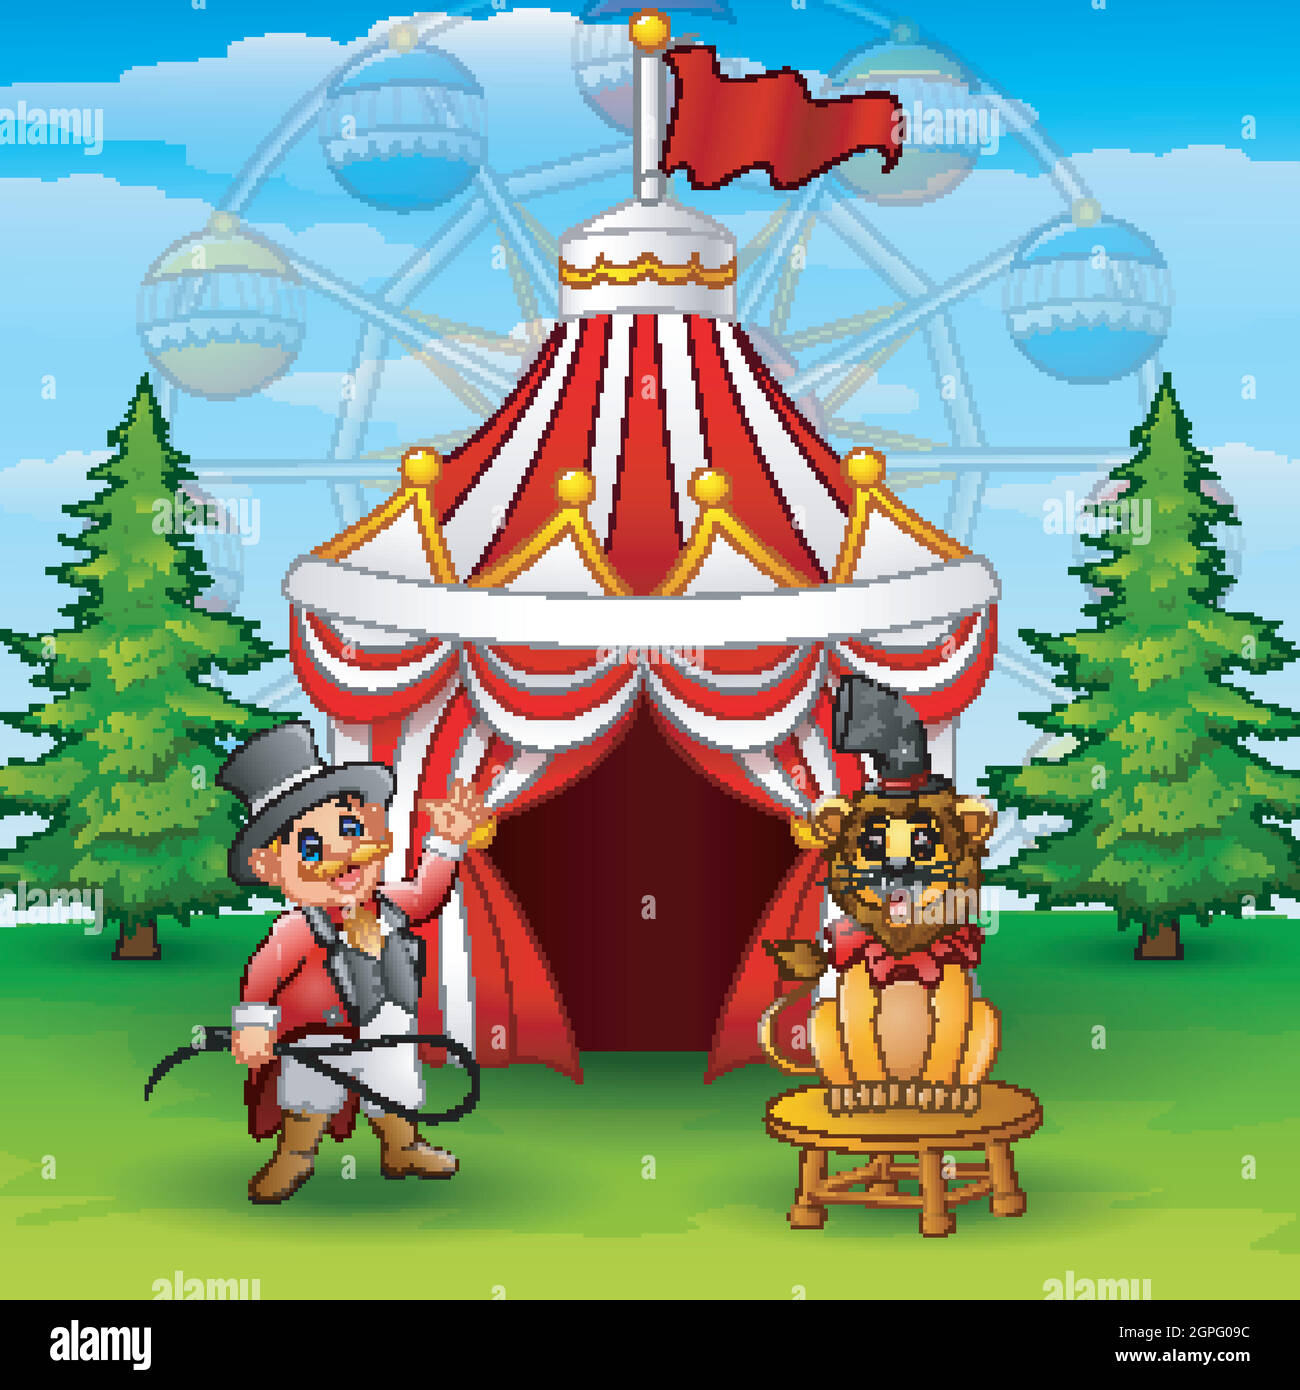 Cartoon tamer e leone sullo sfondo della tenda del circo Illustrazione Vettoriale